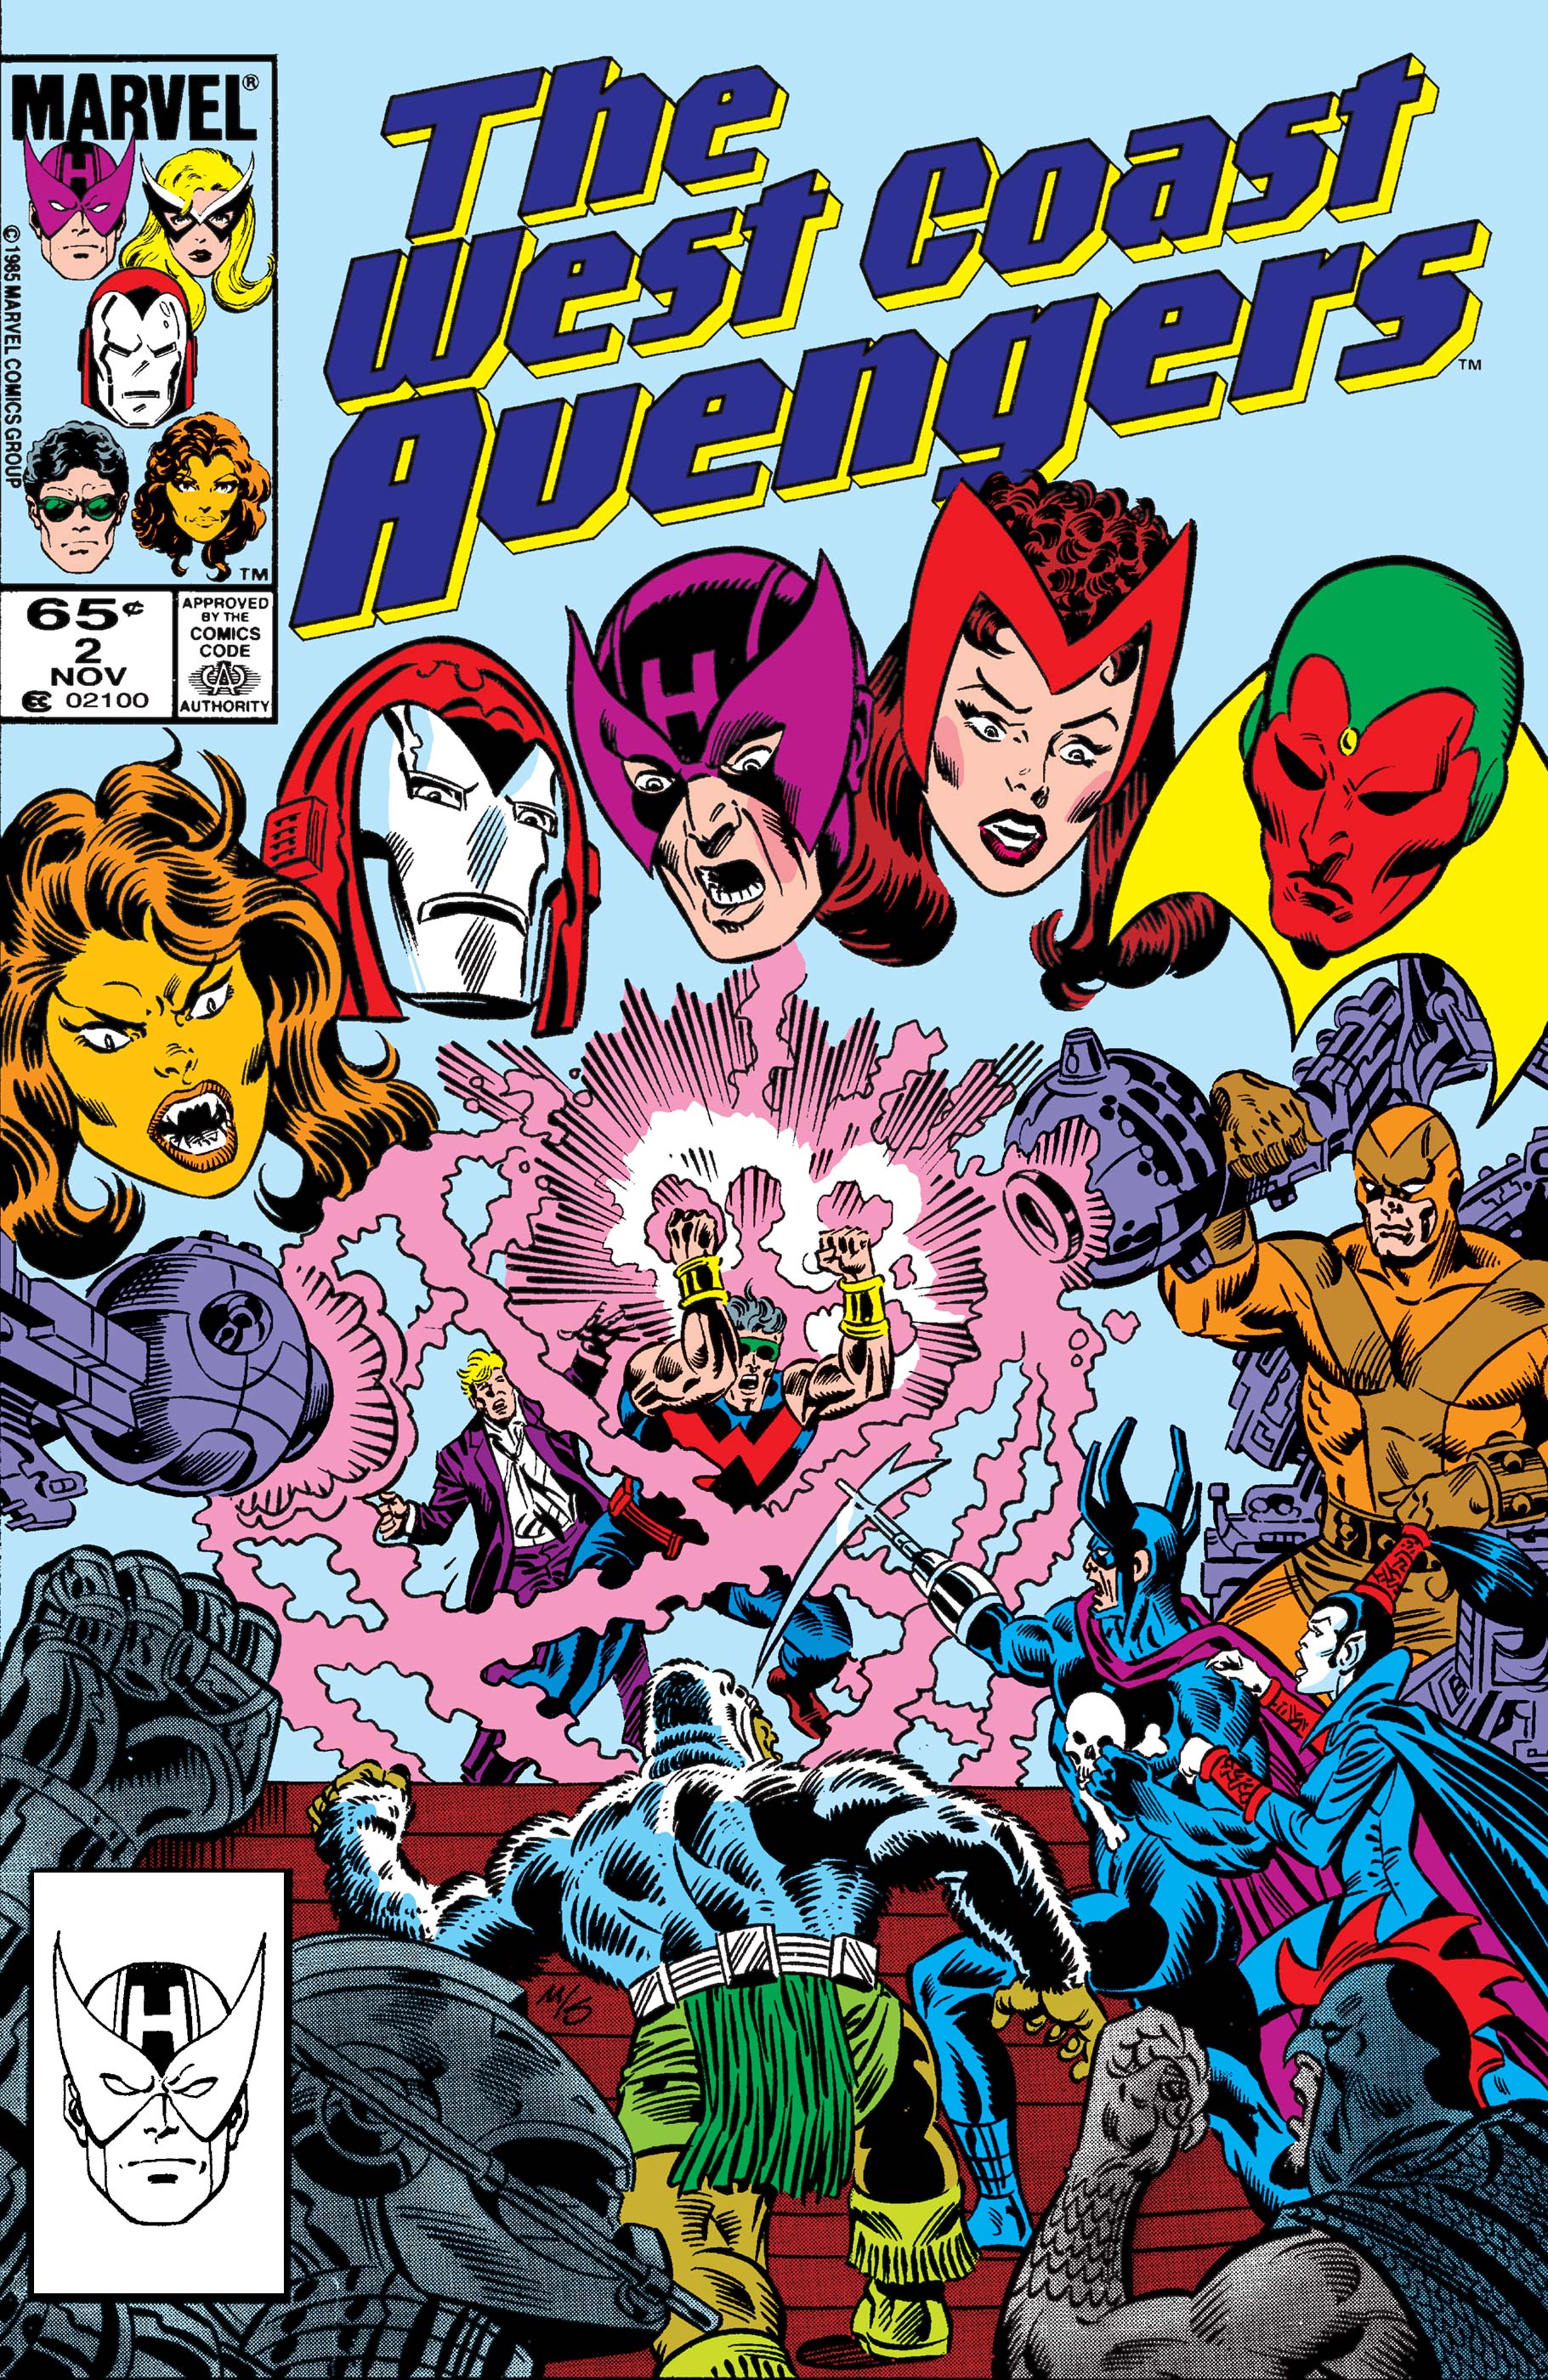 West Coast Avengers (1985) #2